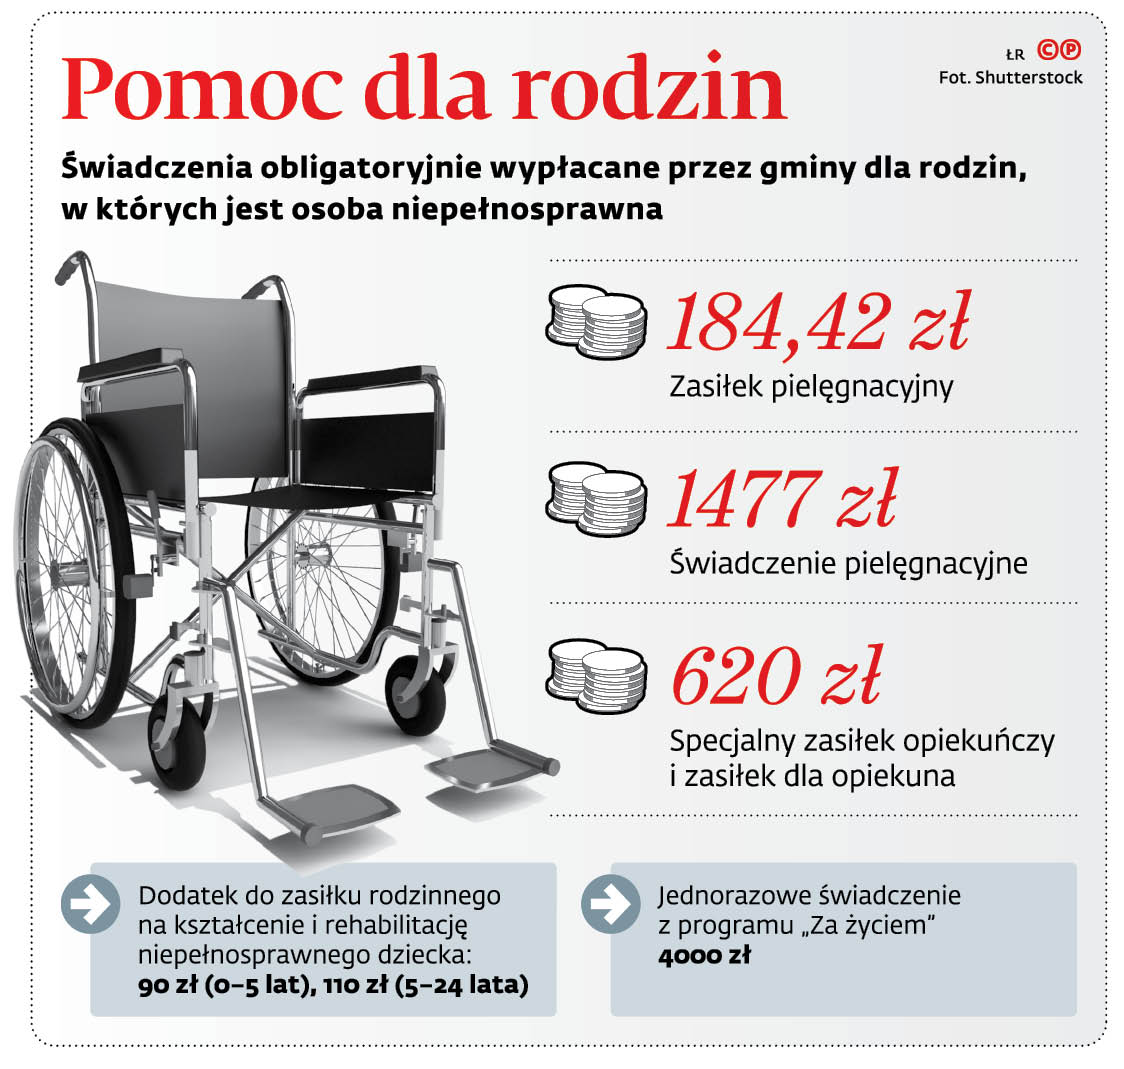 500 zł dodatku, rabat na taxi i basen. Zobacz, jak miasta wspierają  niepełnosprawnych - Forsal.pl